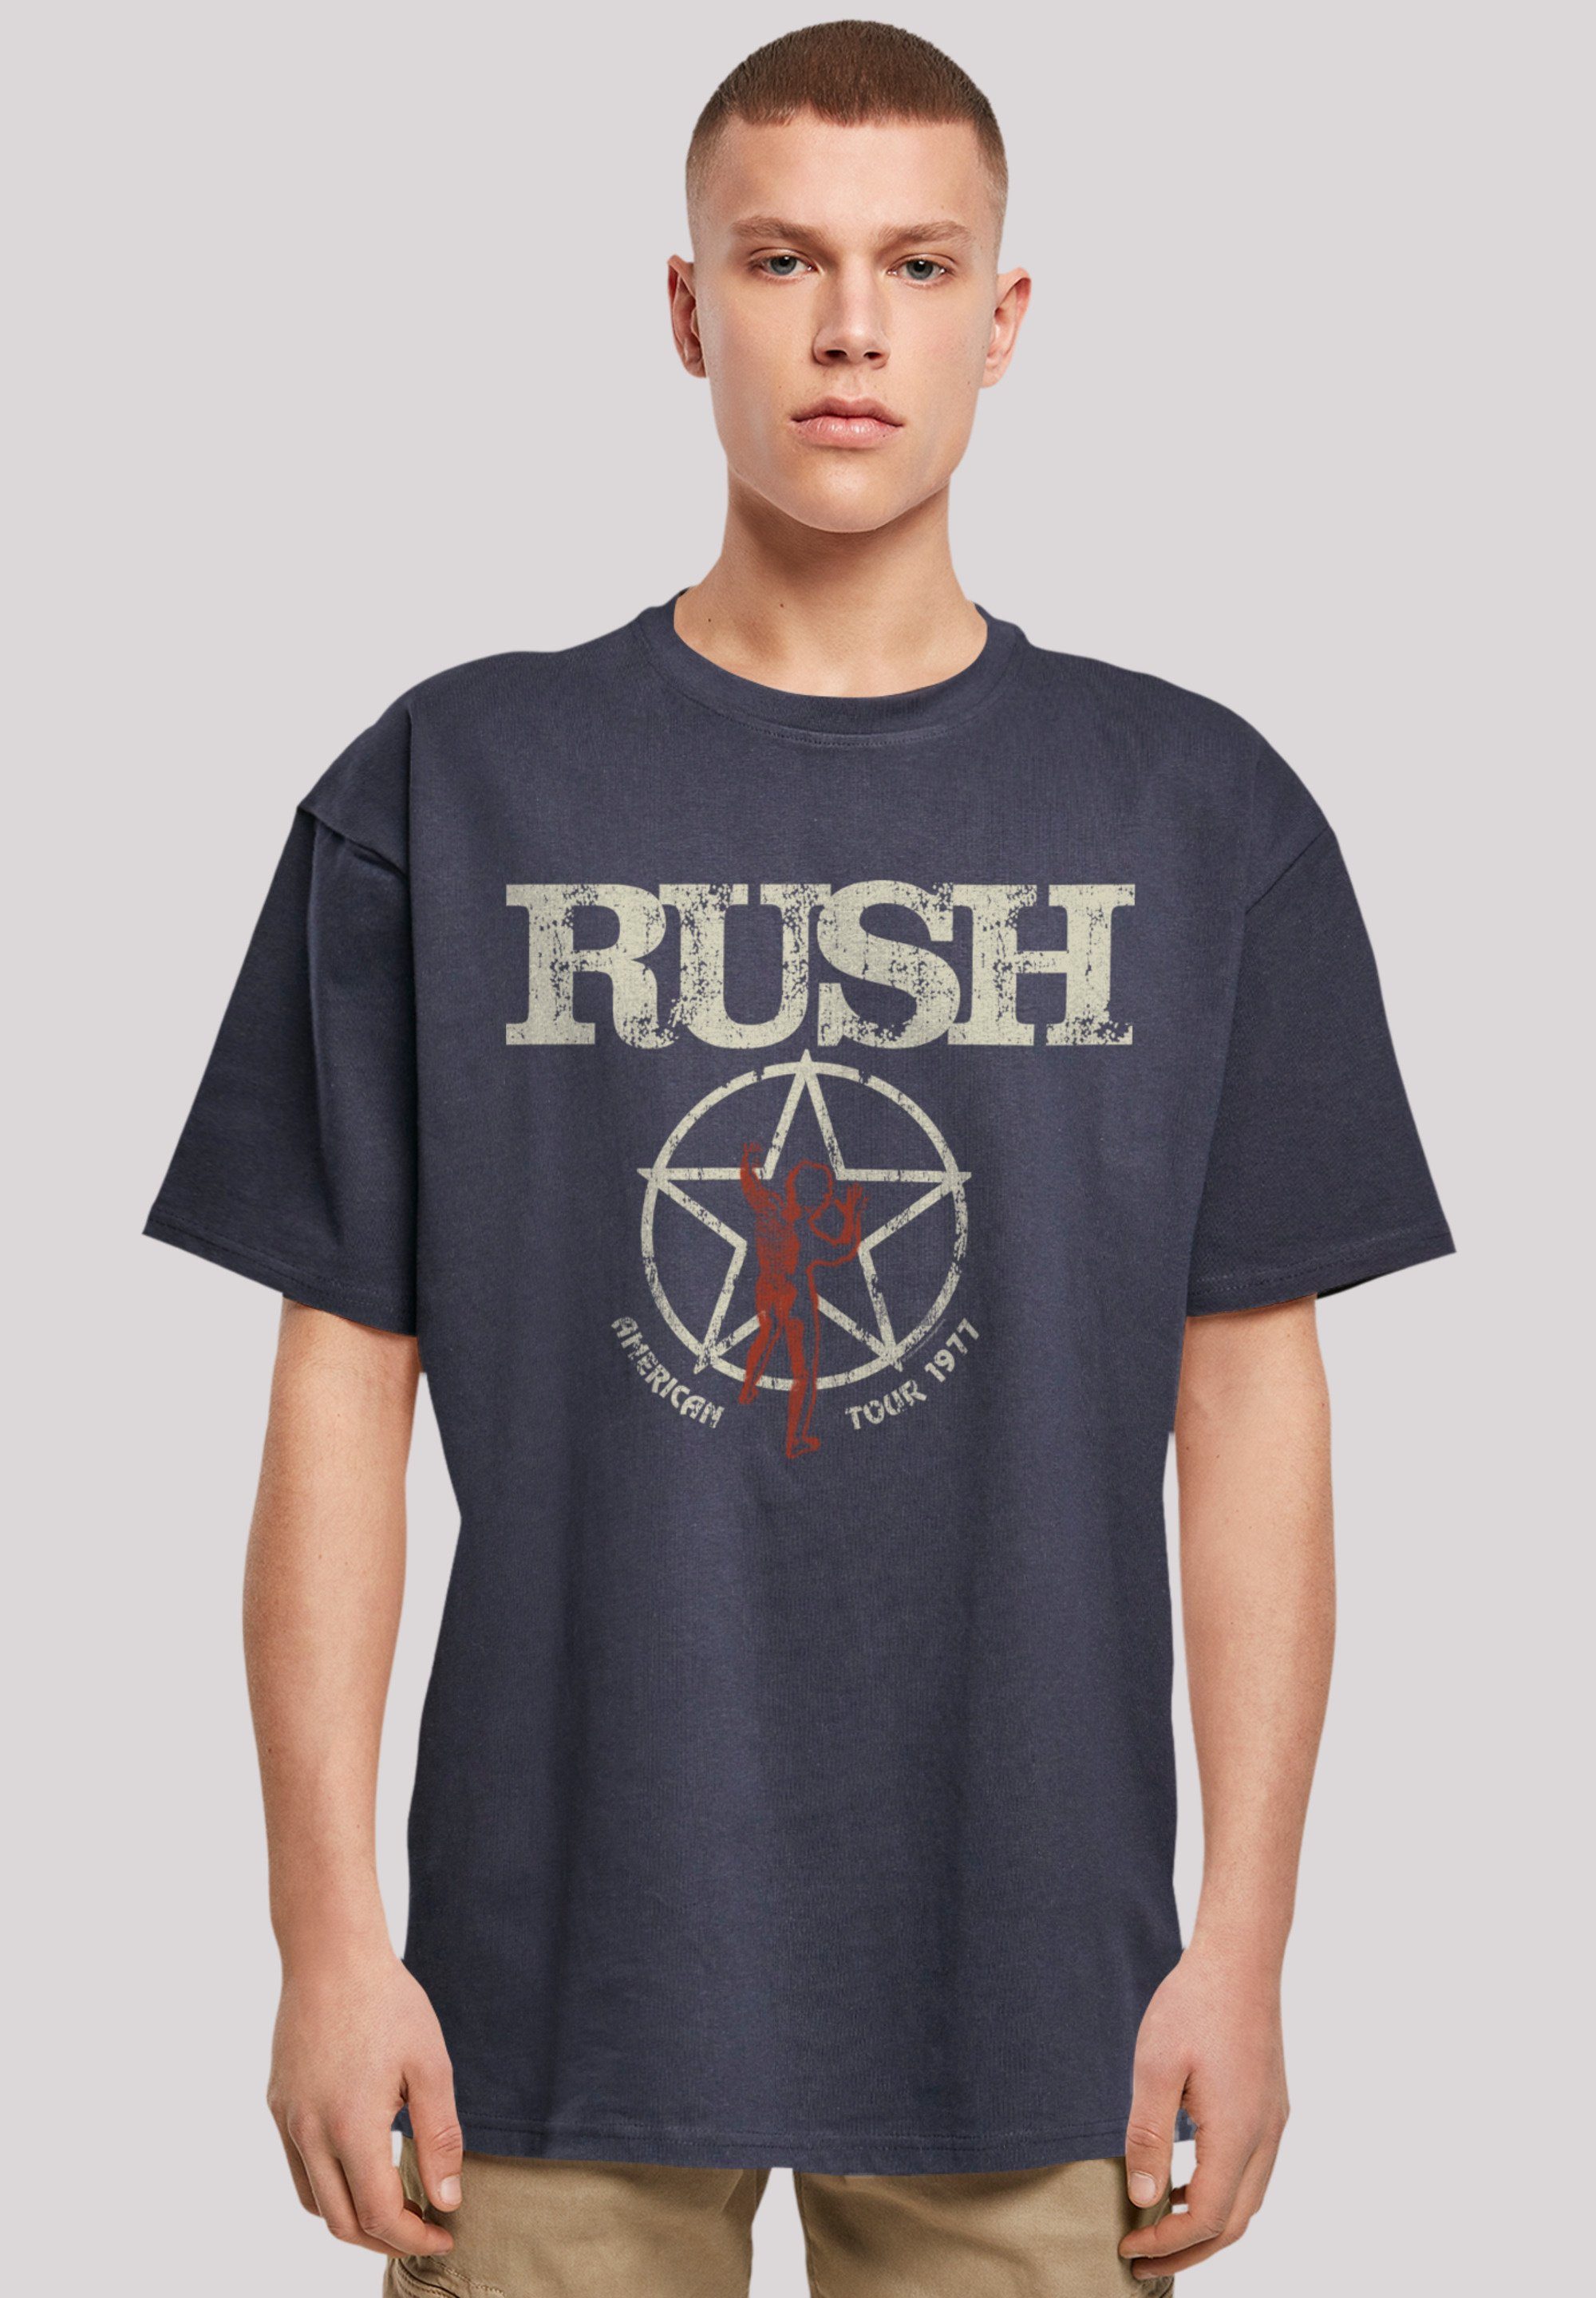 F4NT4STIC T-Shirt Qualität Premium 1977 Rush Rock Band Tour American navy